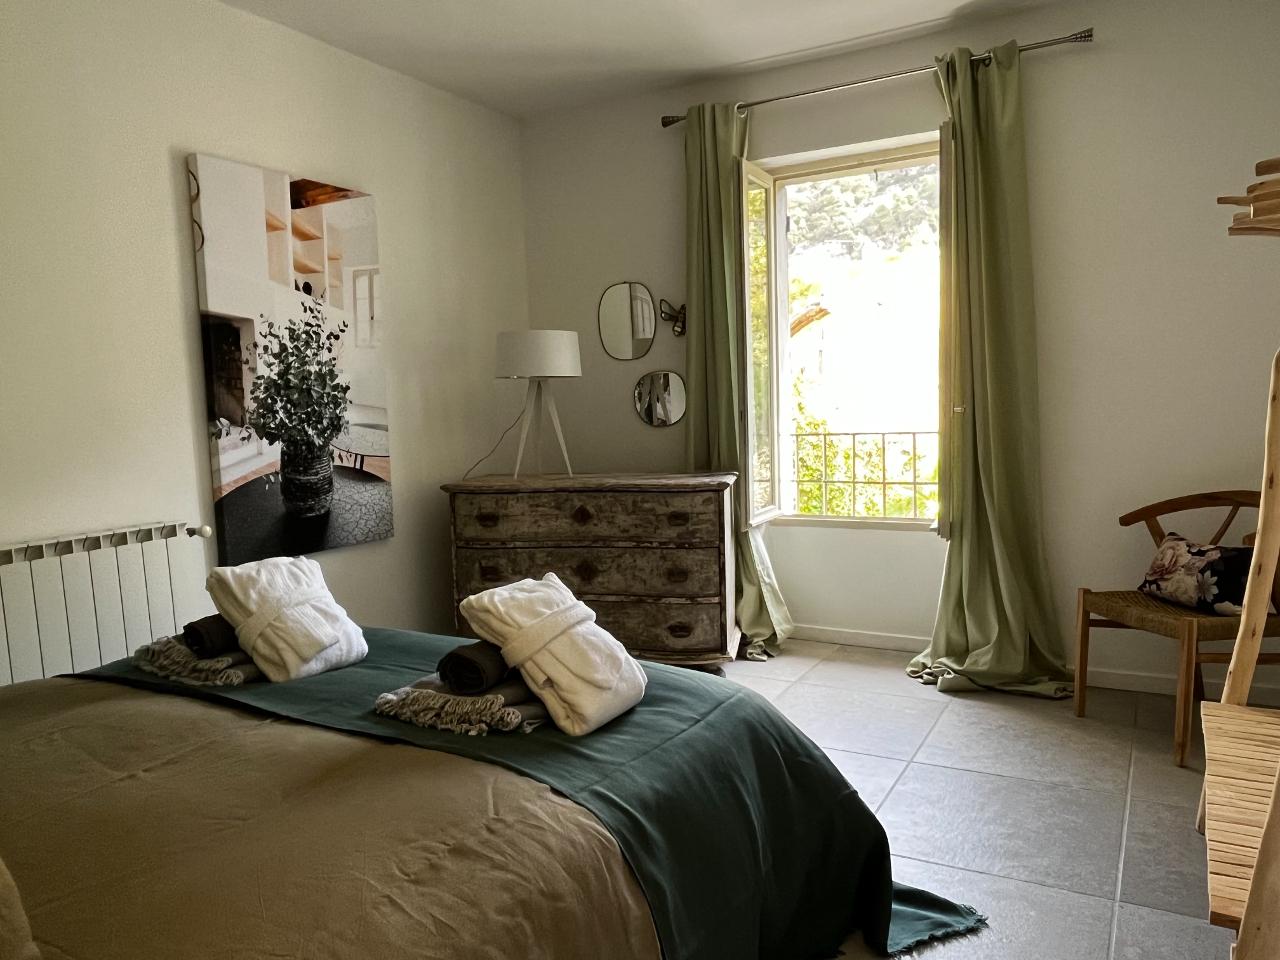 Hôte GreenGo: Le 52 en Provence - Chambres d’hôtes dans Authentique Mas de Village avec Piscine - Image 17